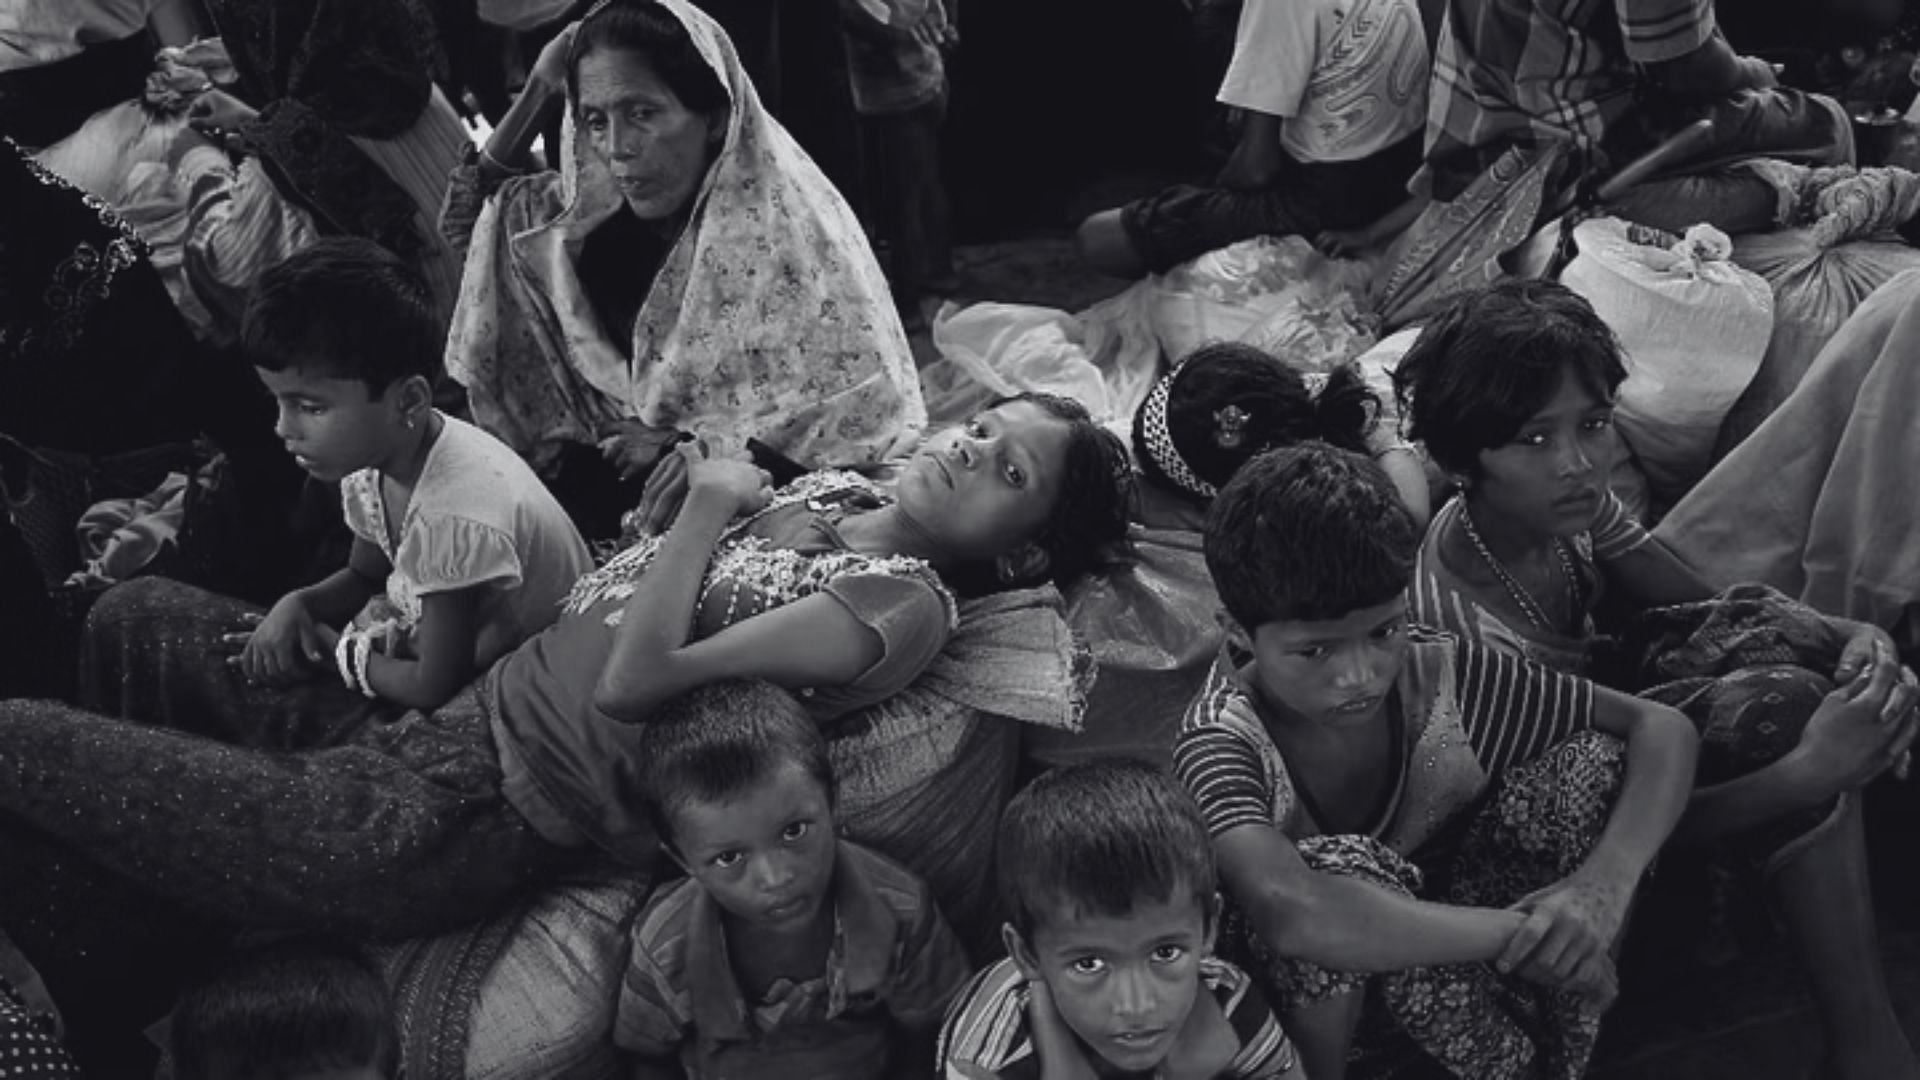 <div class="paragraphs"><p>Rohingya: भारत में कितने रोहिंग्या मुसलमान हैं,क्या भारत उनको शरणार्थी मानता है?</p></div>